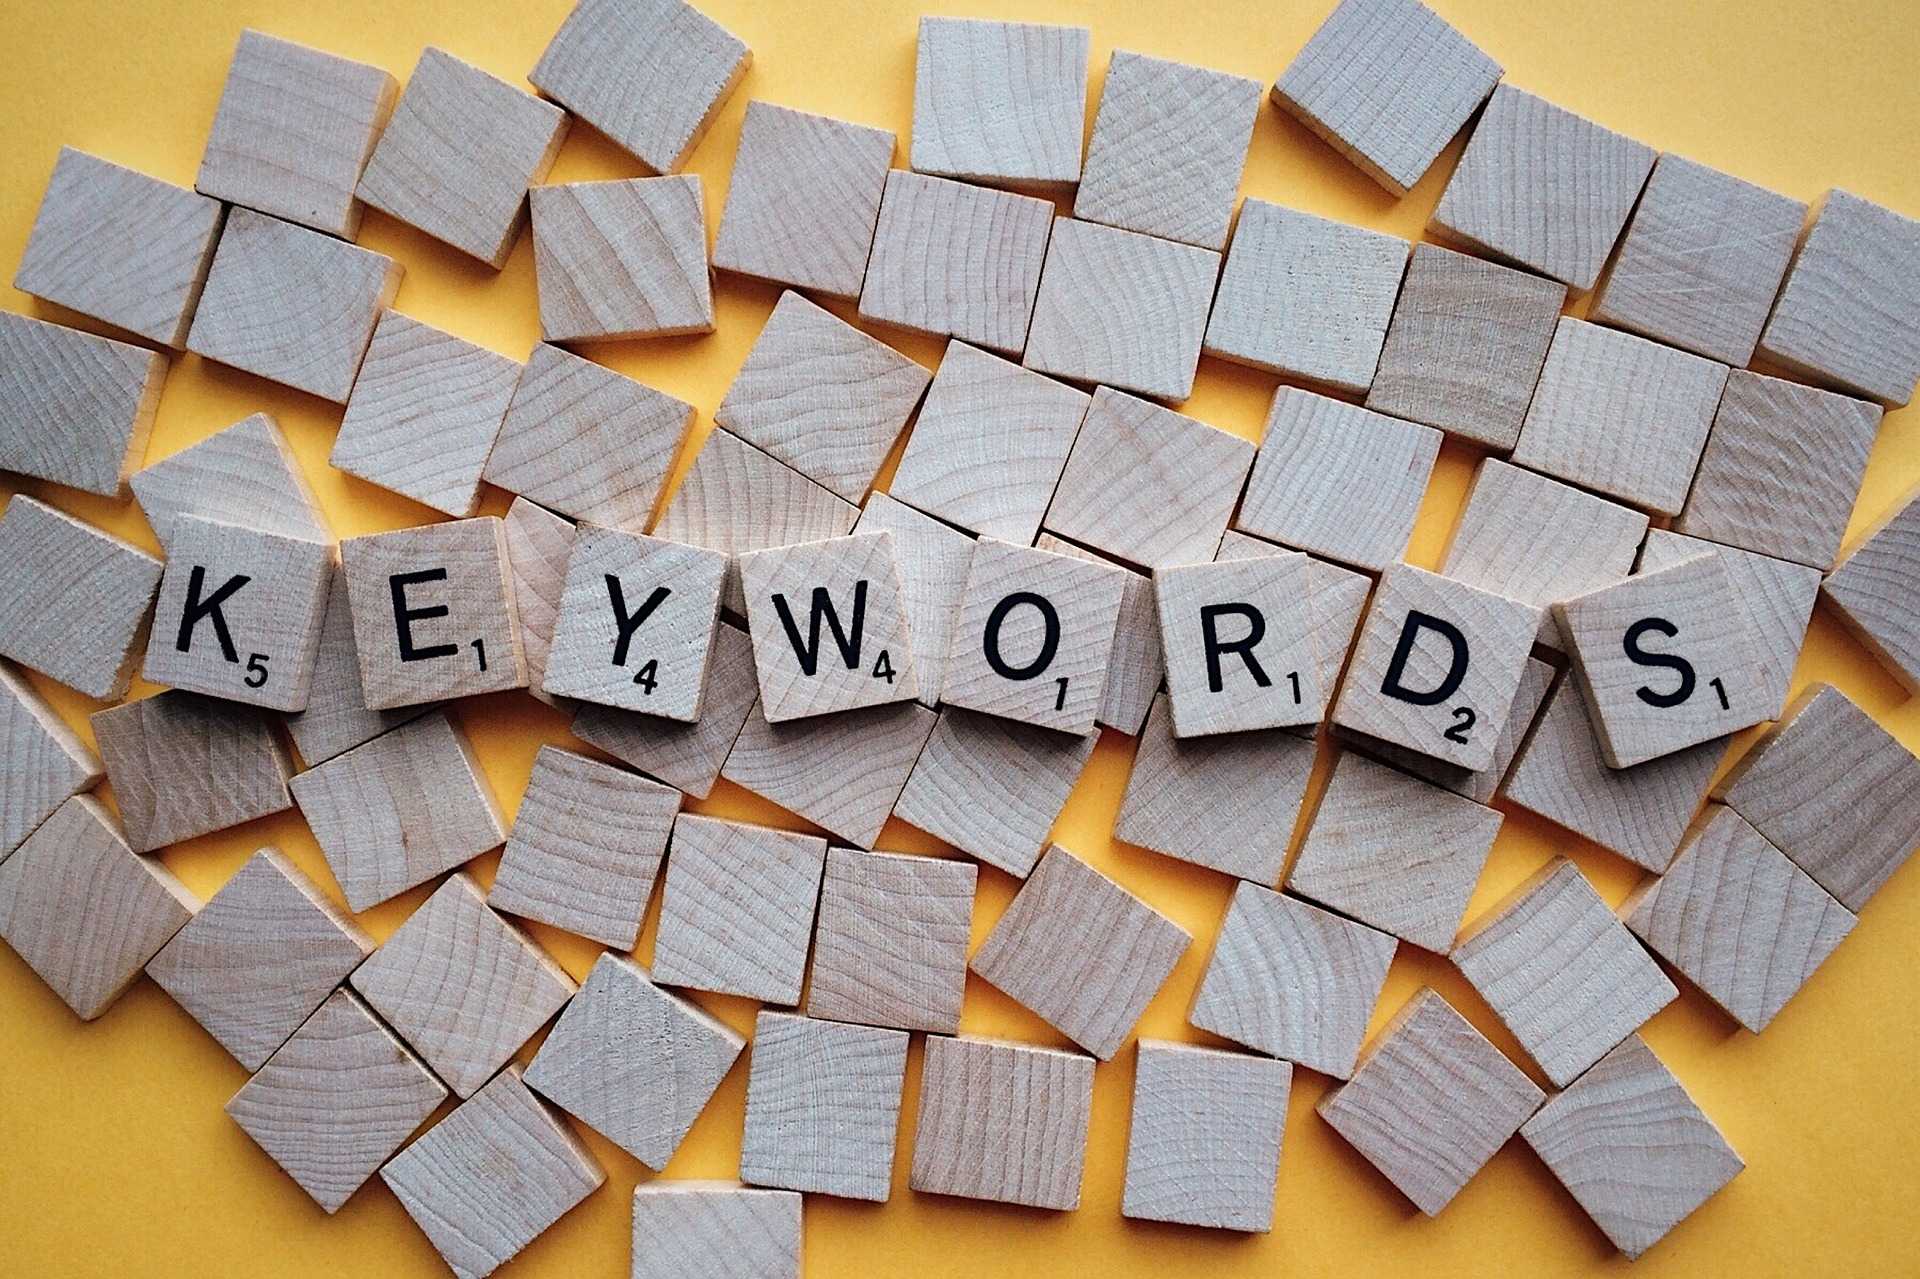 Anglų kalbos terminas Keyword reiškia vieną ar kelis žodžius, kuriuos vartotojai įrašo paieškos sistemose, norėdami rasti ir peržiūrėti juos dominančias svetaines